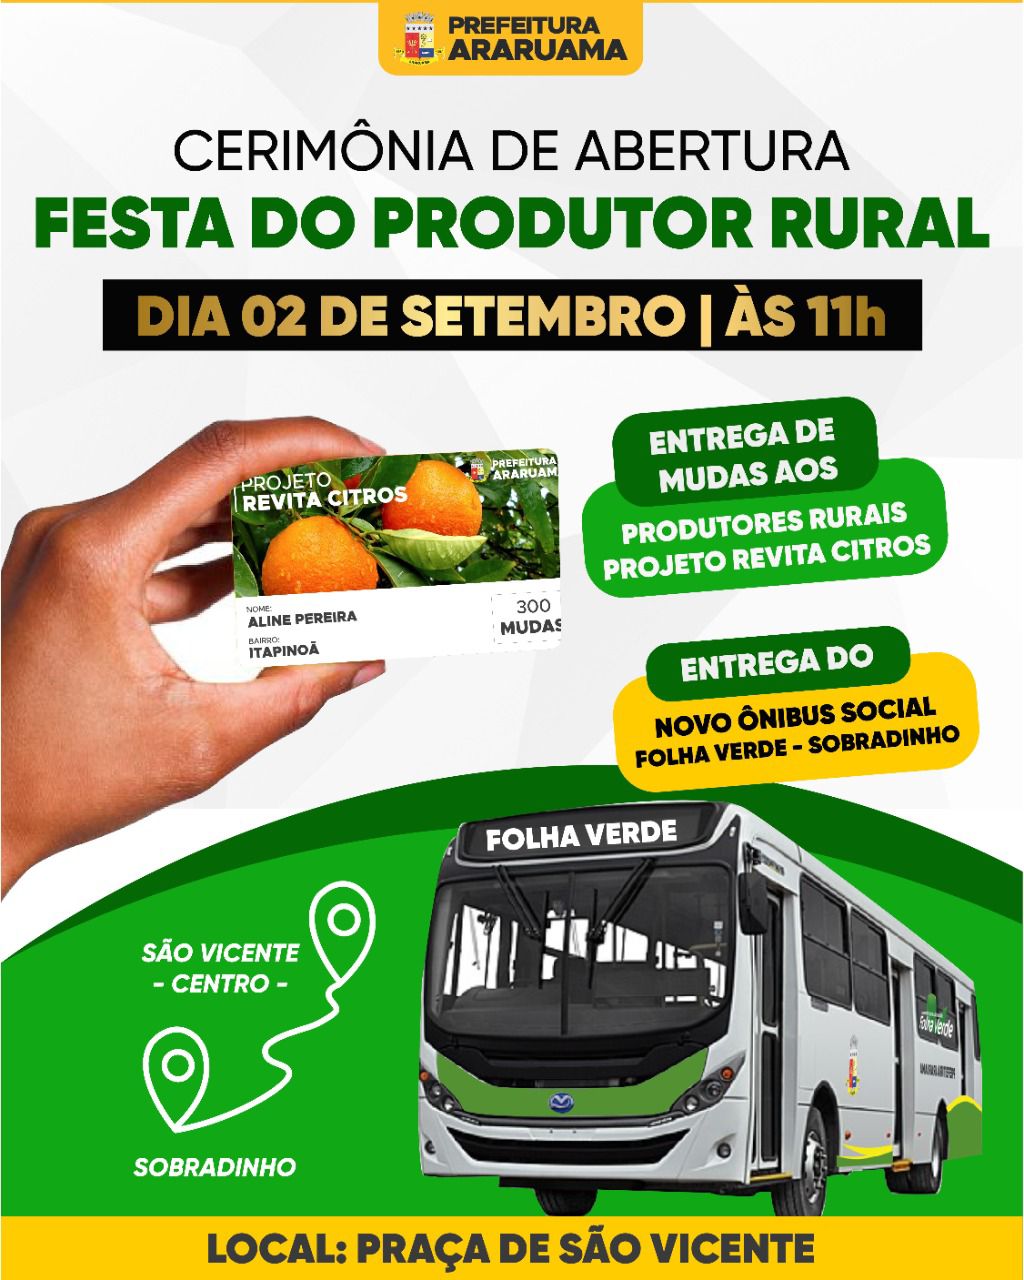 Cerimônia de abertura da 2ª Festa do Produtor Rural será marcada pela entrega de um ônibus social e mudas de citros a pequenos agricultores